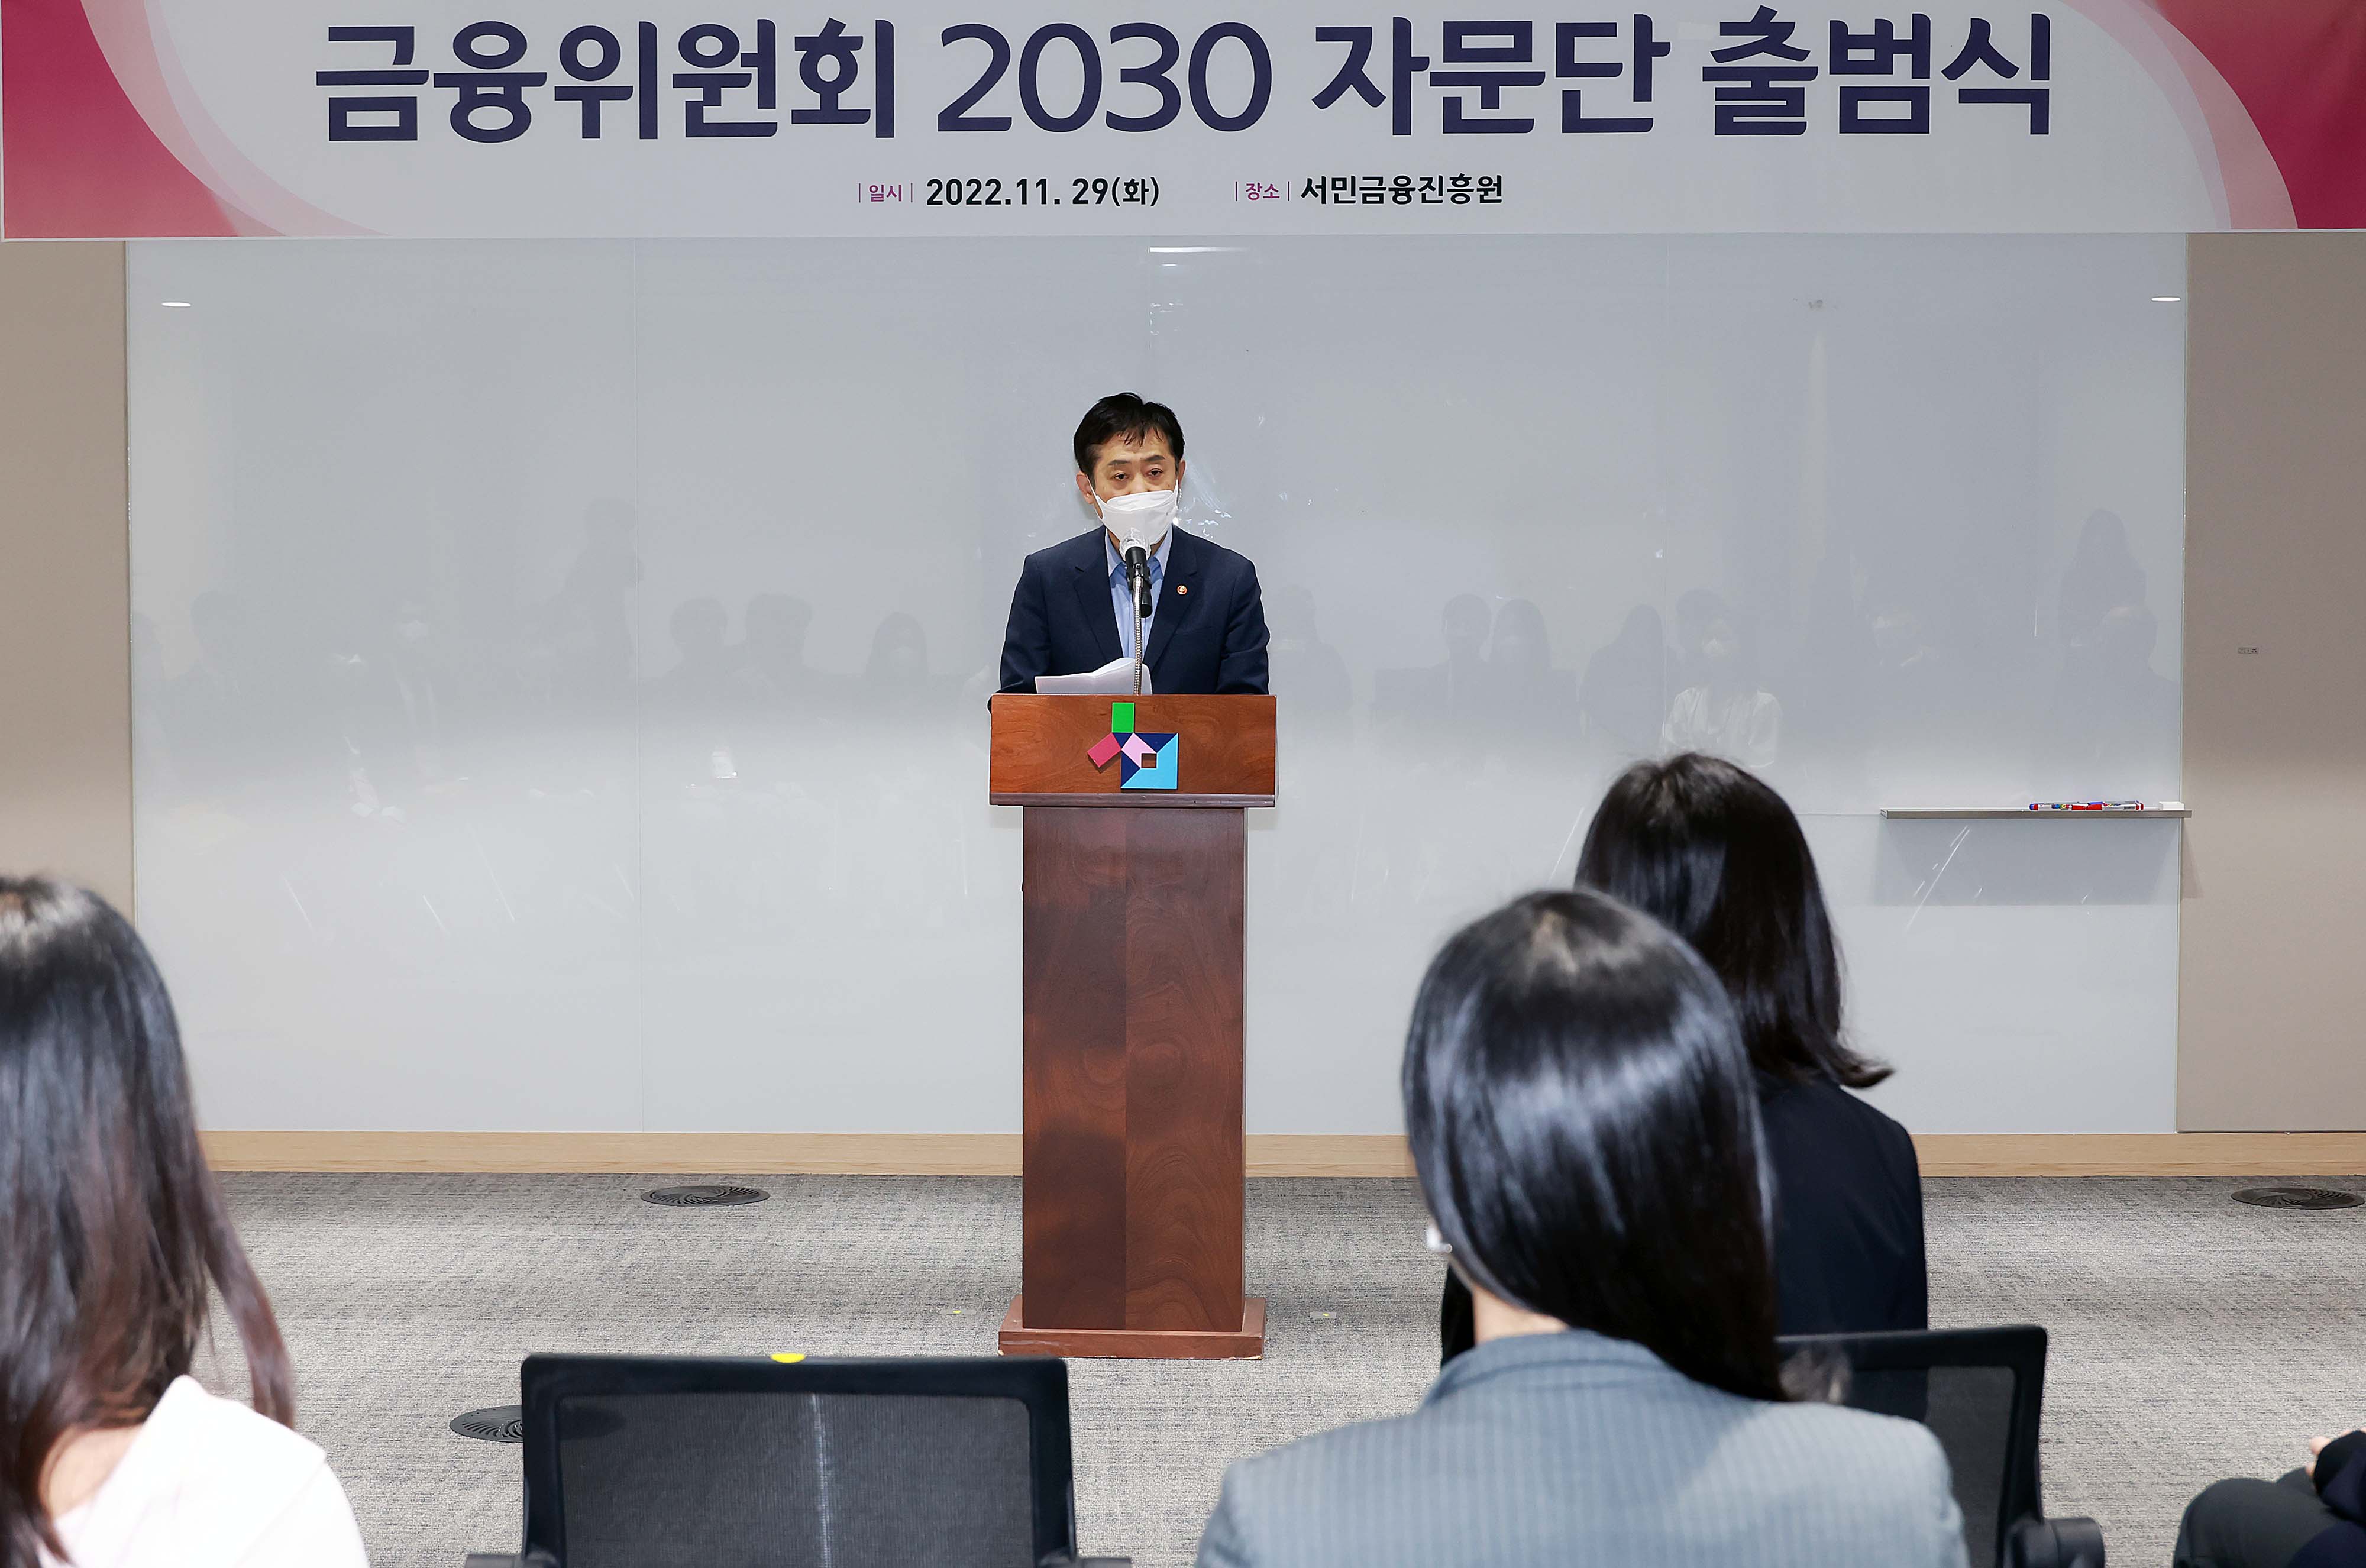 금융위원회 2030 자문단 출범식 개최3